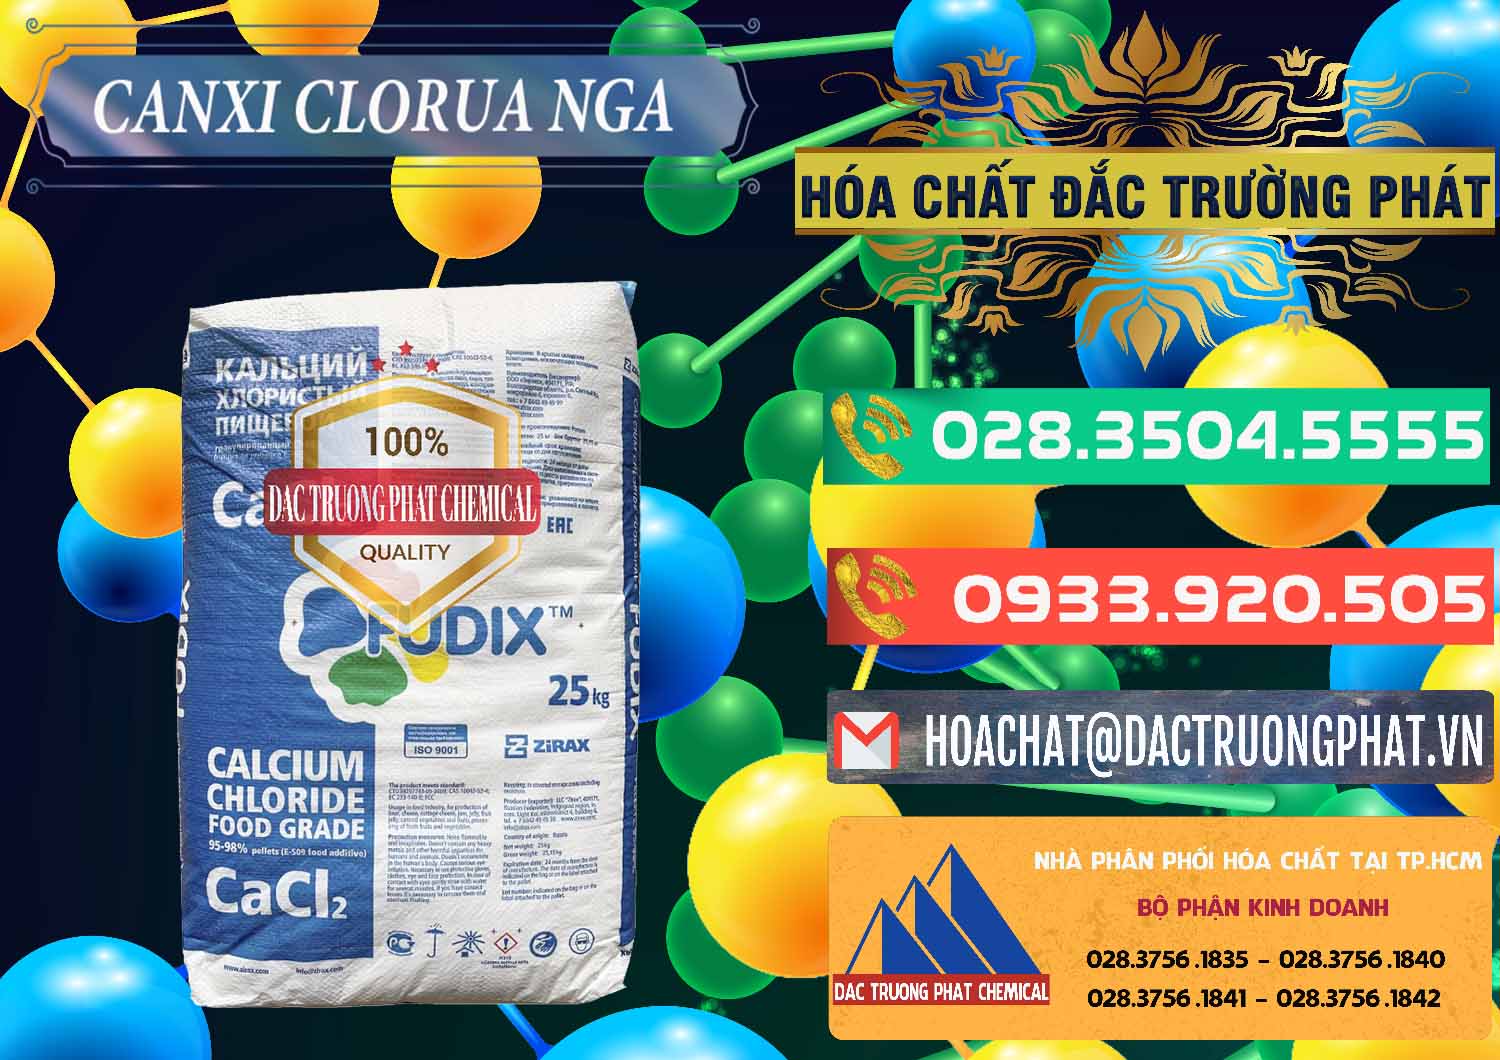 Cty kinh doanh & bán CaCl2 – Canxi Clorua Nga Russia - 0430 - Công ty chuyên bán & phân phối hóa chất tại TP.HCM - congtyhoachat.com.vn